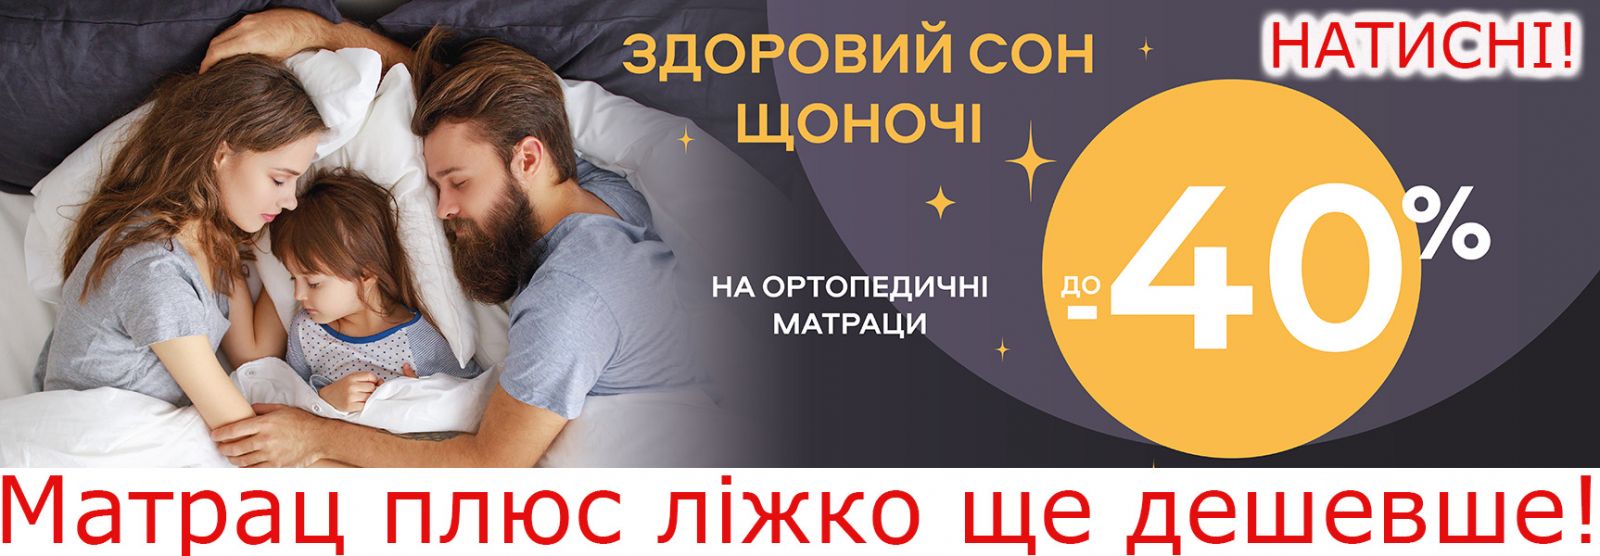 Распродажа кроватей и матрасов в Николаеве по скидкам до 40 процентов